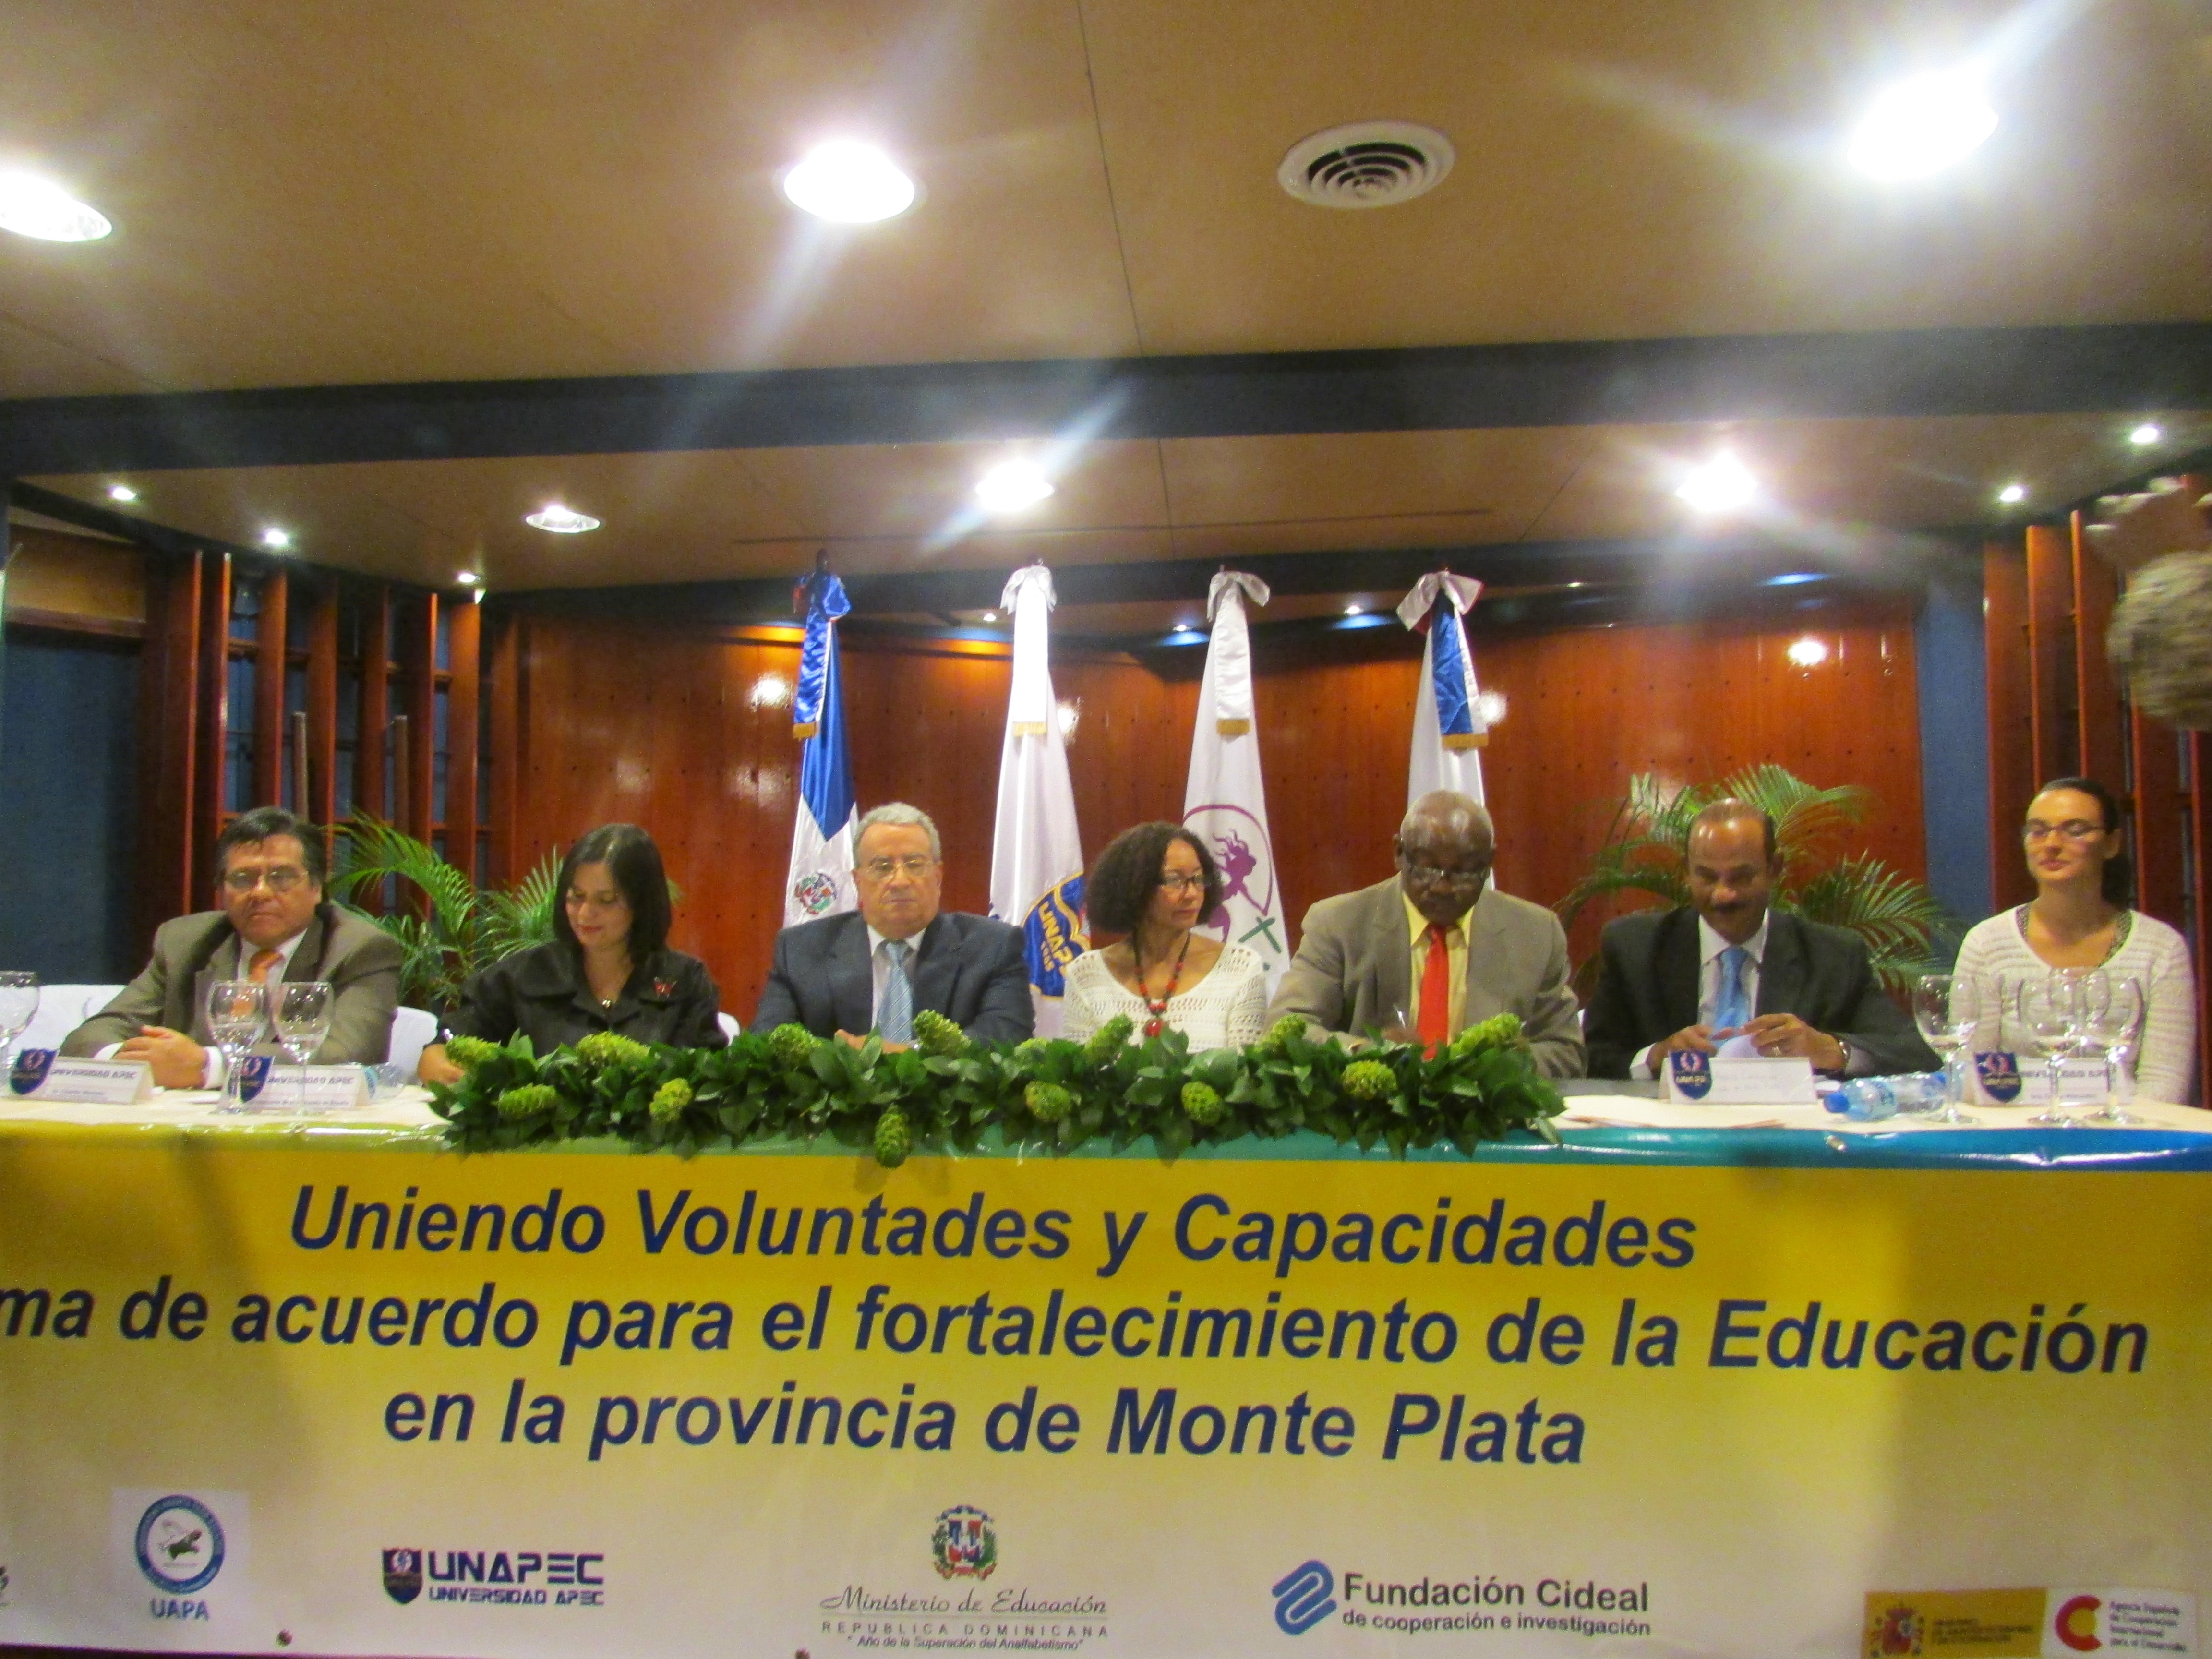 La mesa de honor estuvo representada por el Dr. Radhamés Mejía, Rector de UNAPEC, junto a representantes del MINERD, UAPA y La Asociación Tú, Mujer.